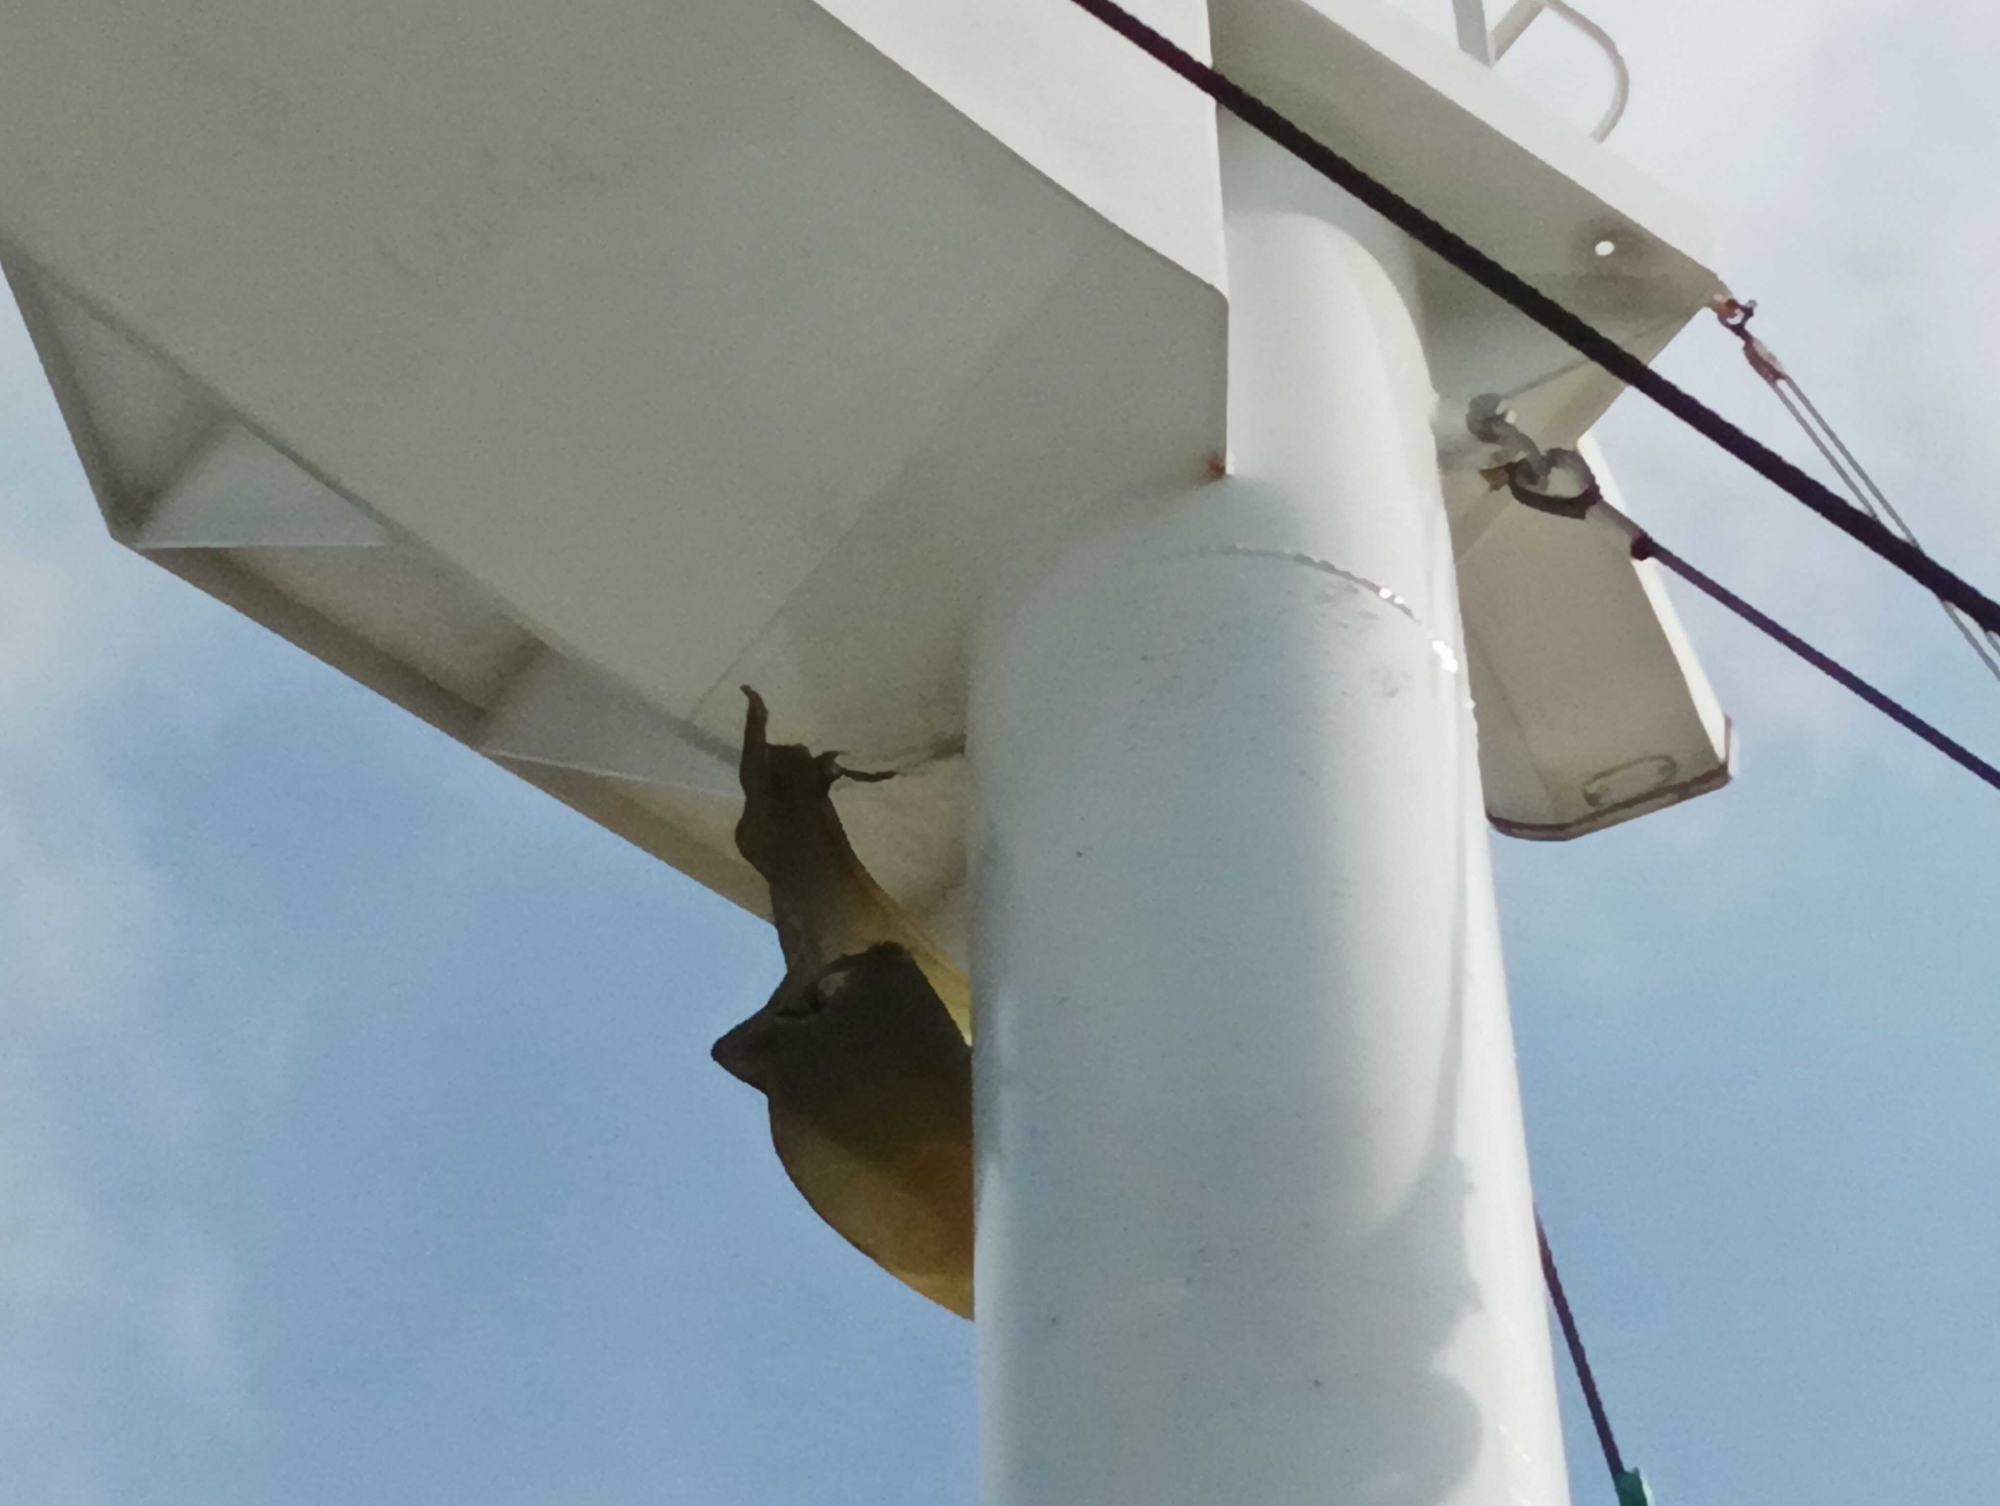 radar mast repair services in Vietnam